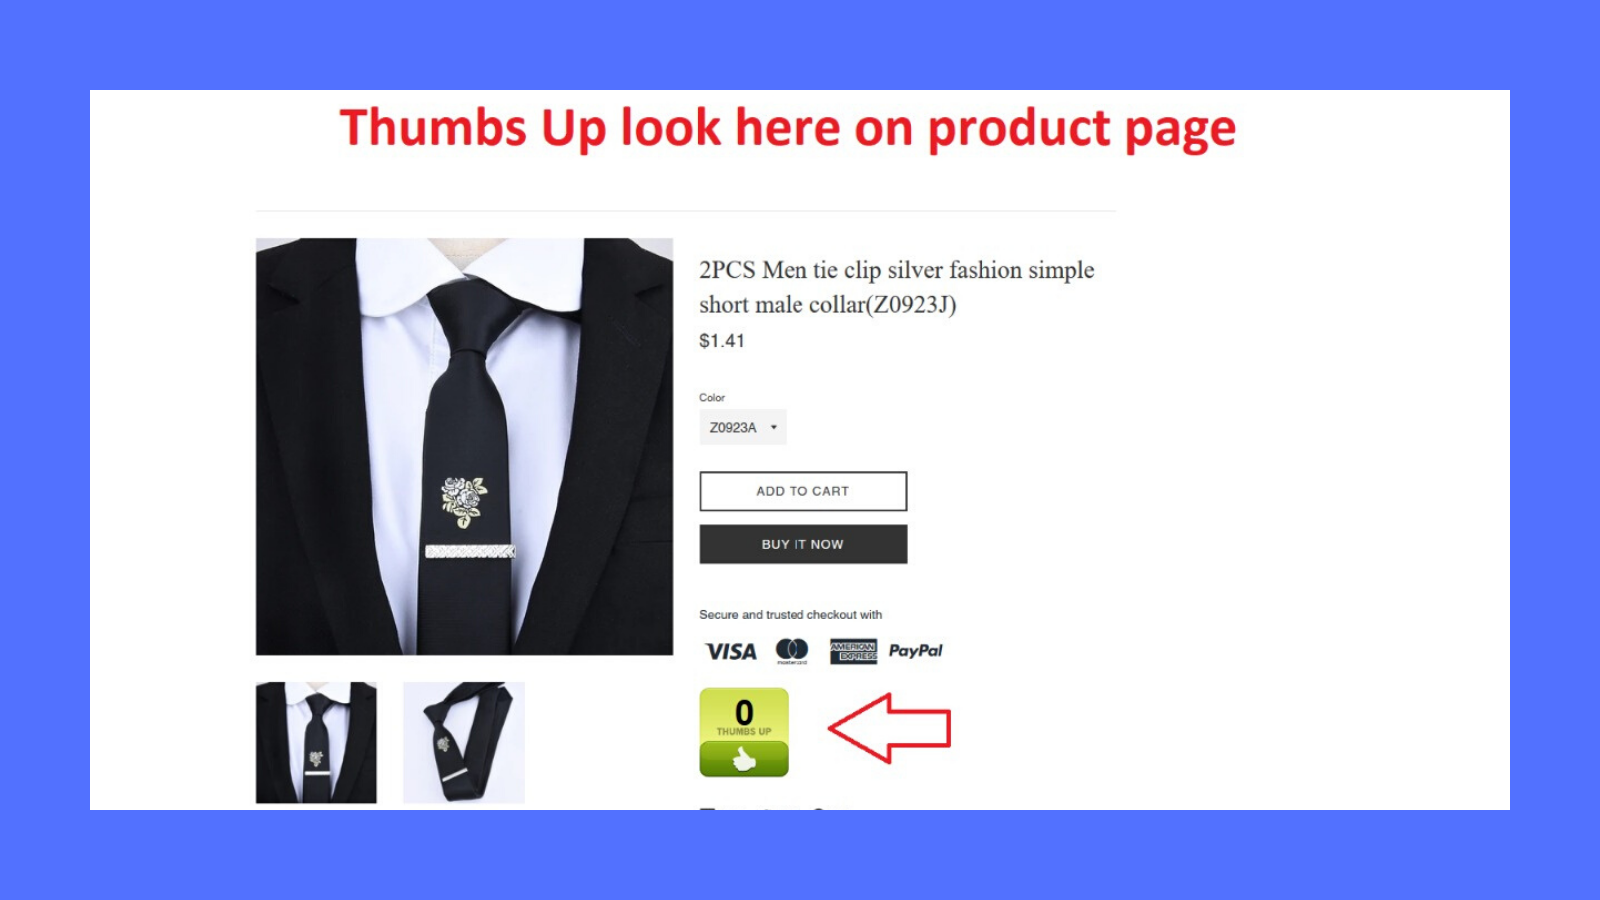 ThumbsUp offre agli utenti un modo semplice per aggiungere utent